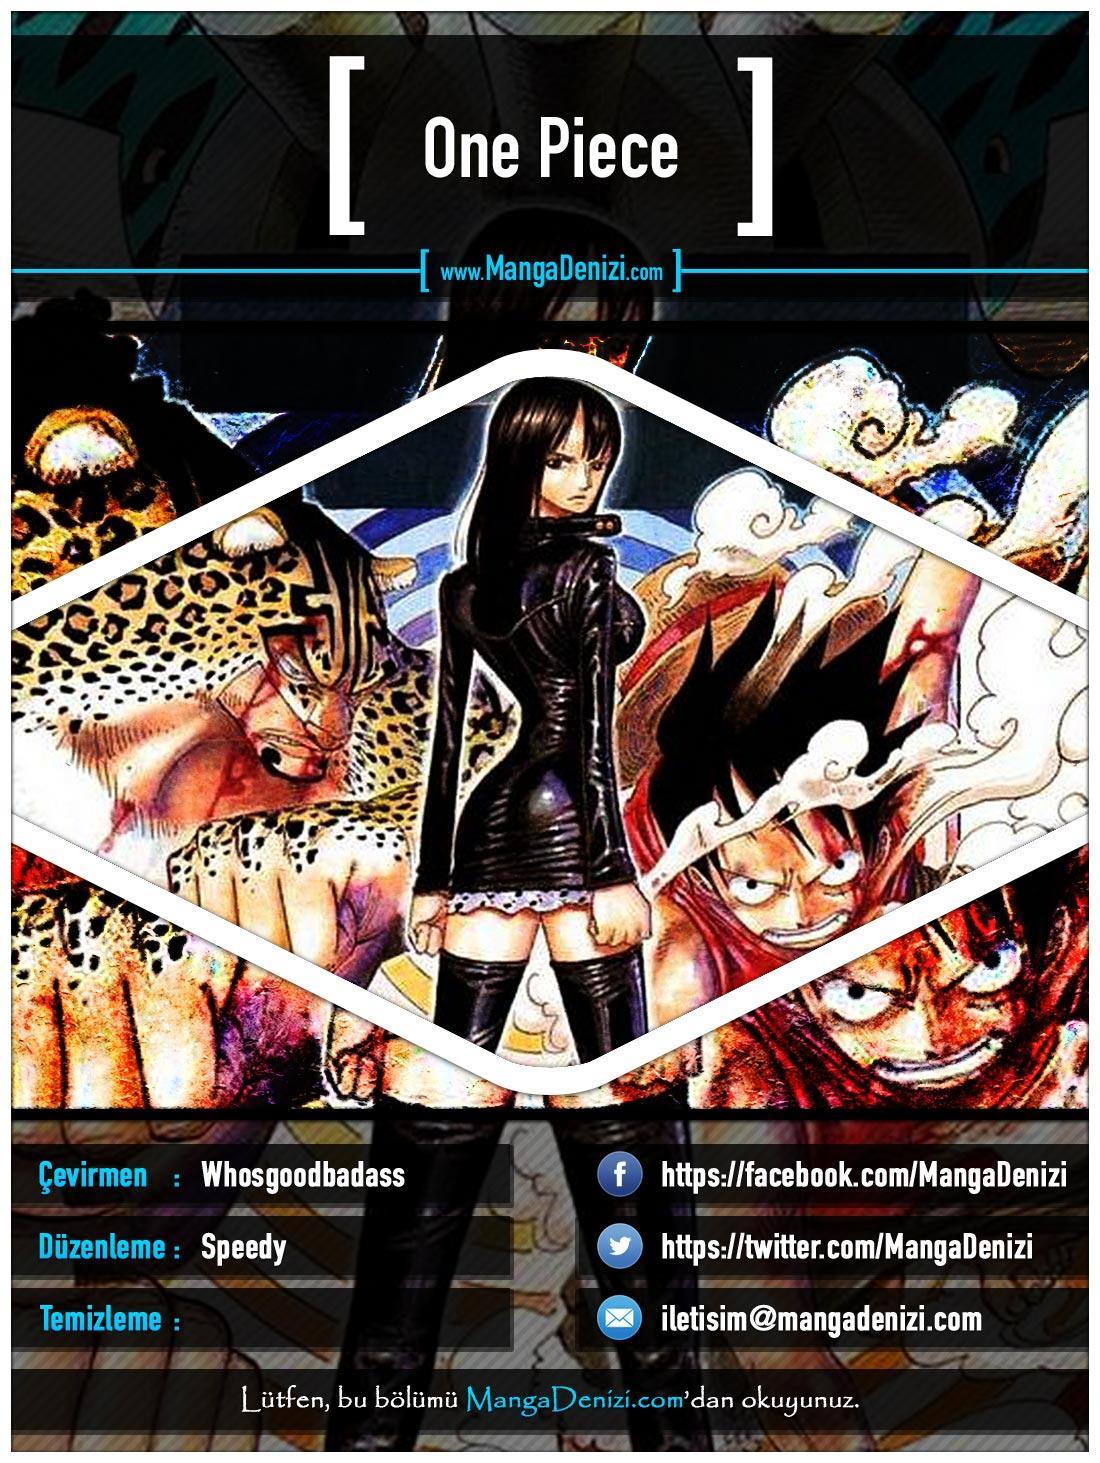 One Piece [Renkli] mangasının 0344 bölümünün 1. sayfasını okuyorsunuz.